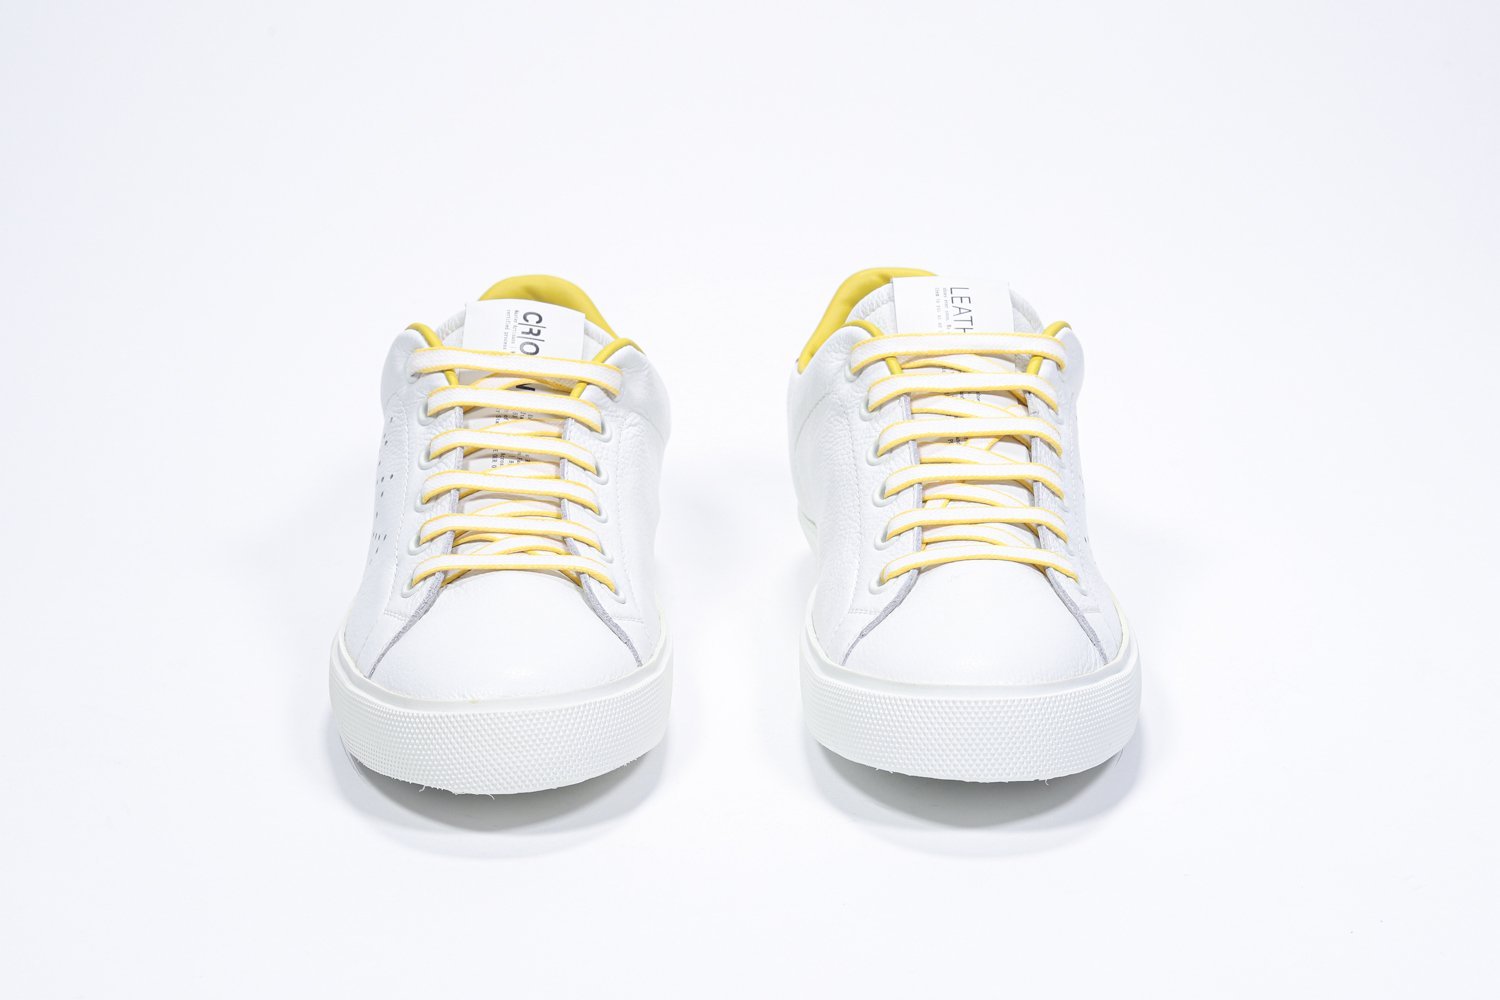 Vue de face de la chaussure blanche sneaker avec des détails jaunes et le logo perforé de la couronne sur la tige. Tige en cuir et semelle en caoutchouc blanc.